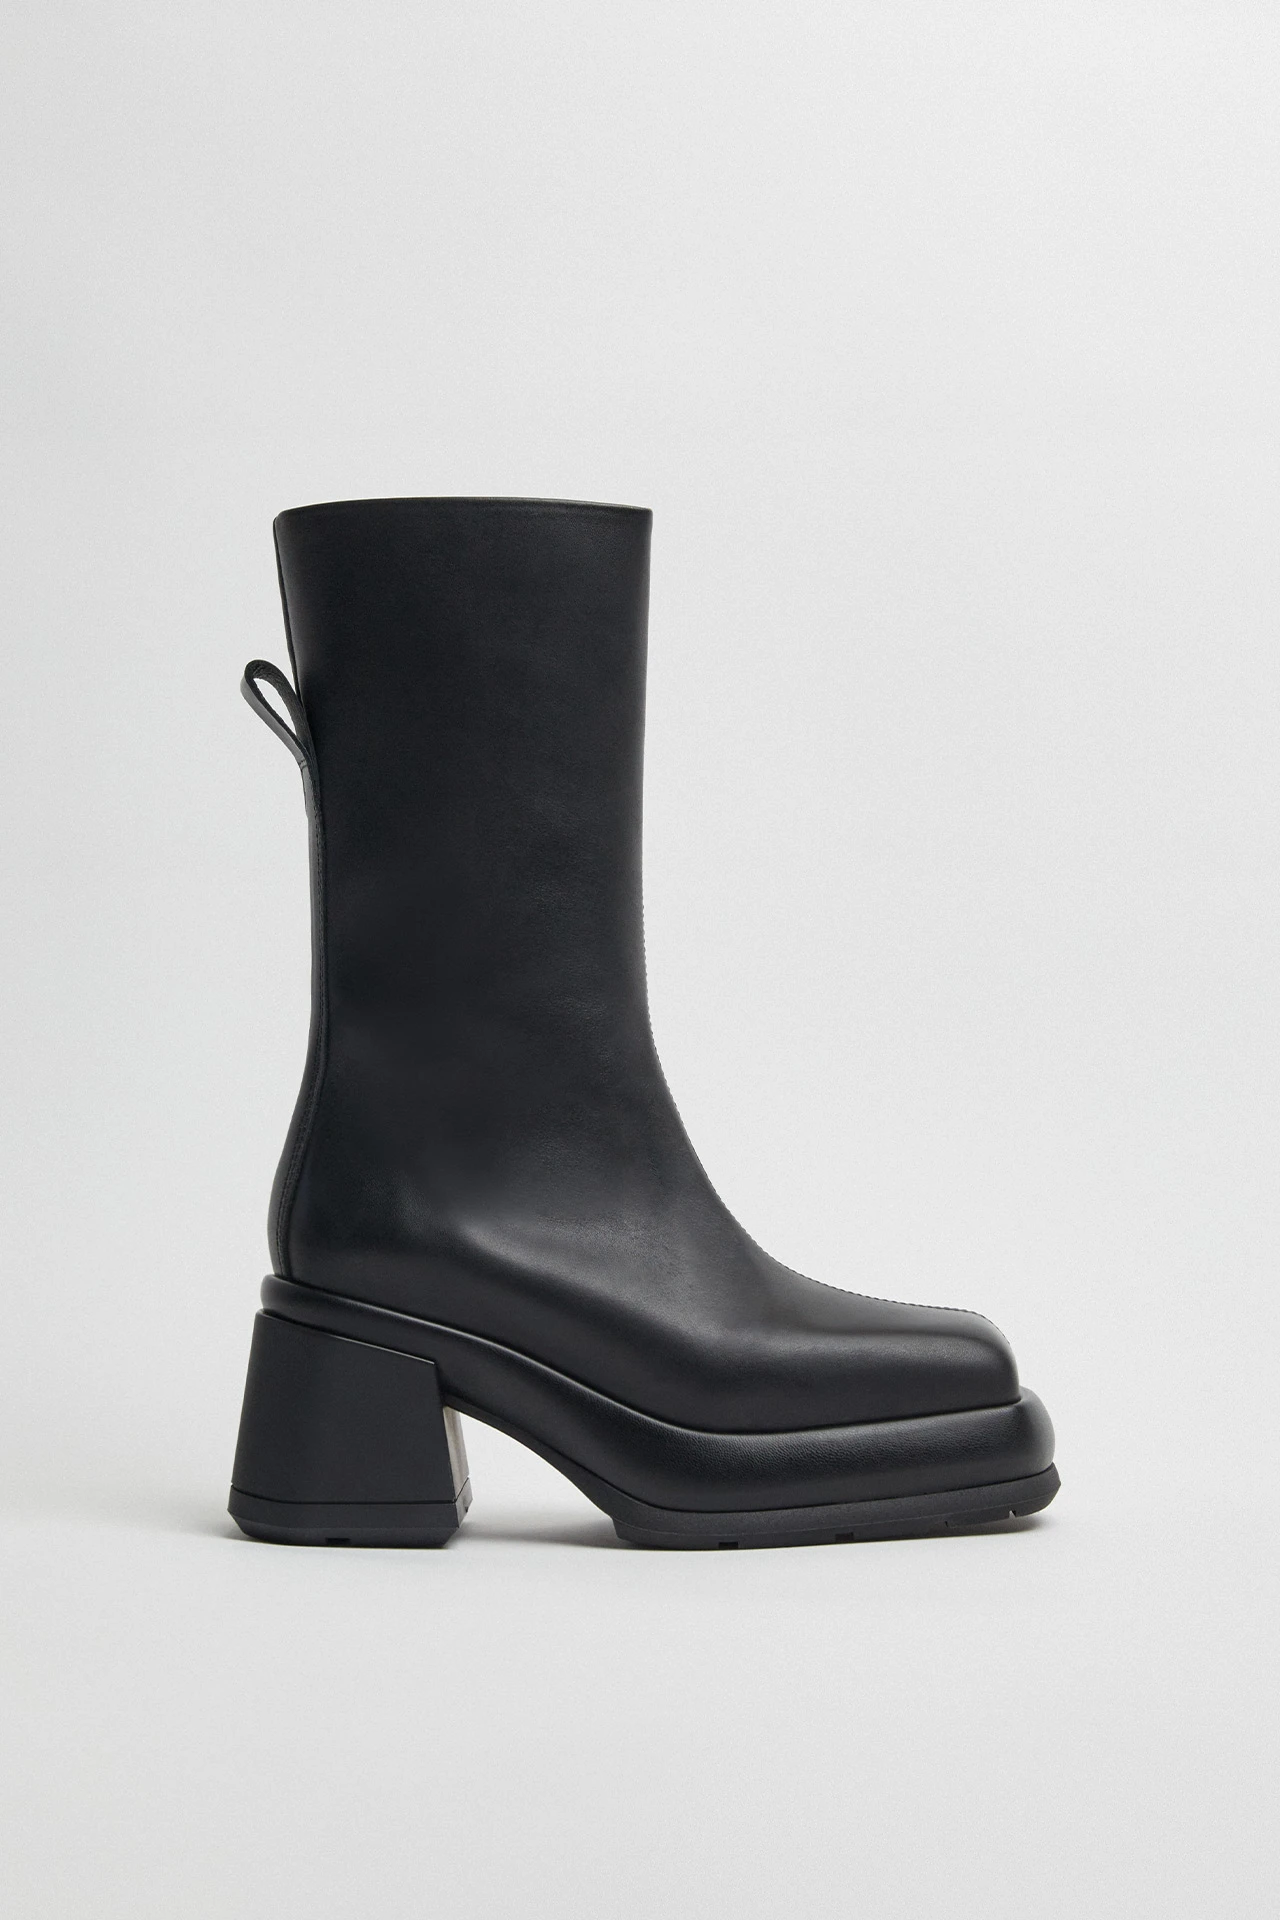 E8-cassia-black-boots-01